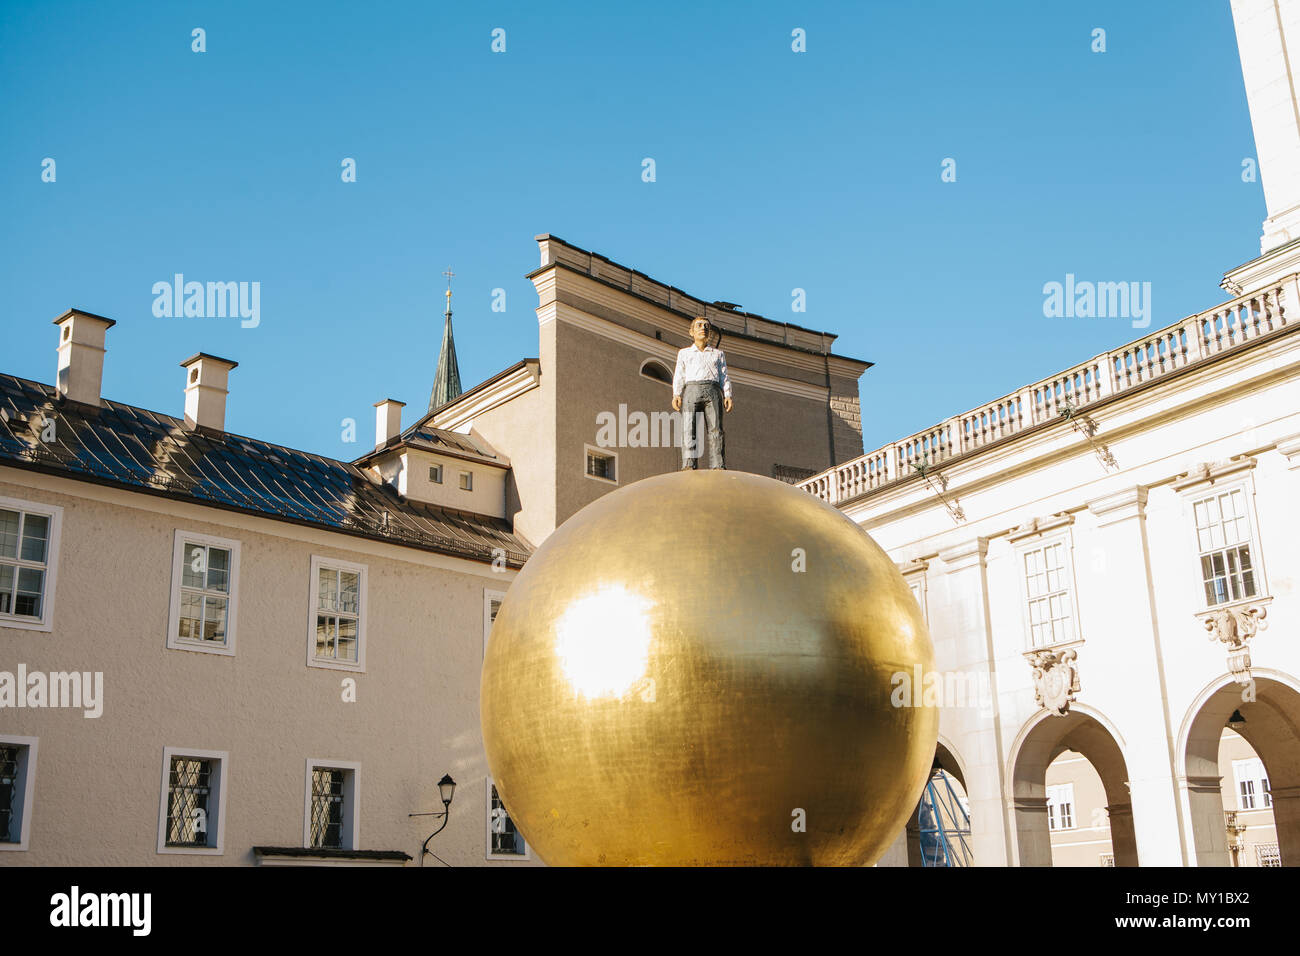 Austria, Salzburgo - 01. 01. 2017. Vista de la bola dorada estatua con hombre en traje formal en la parte superior coloca en la plaza de la ciudad en la luz del sol Foto de stock